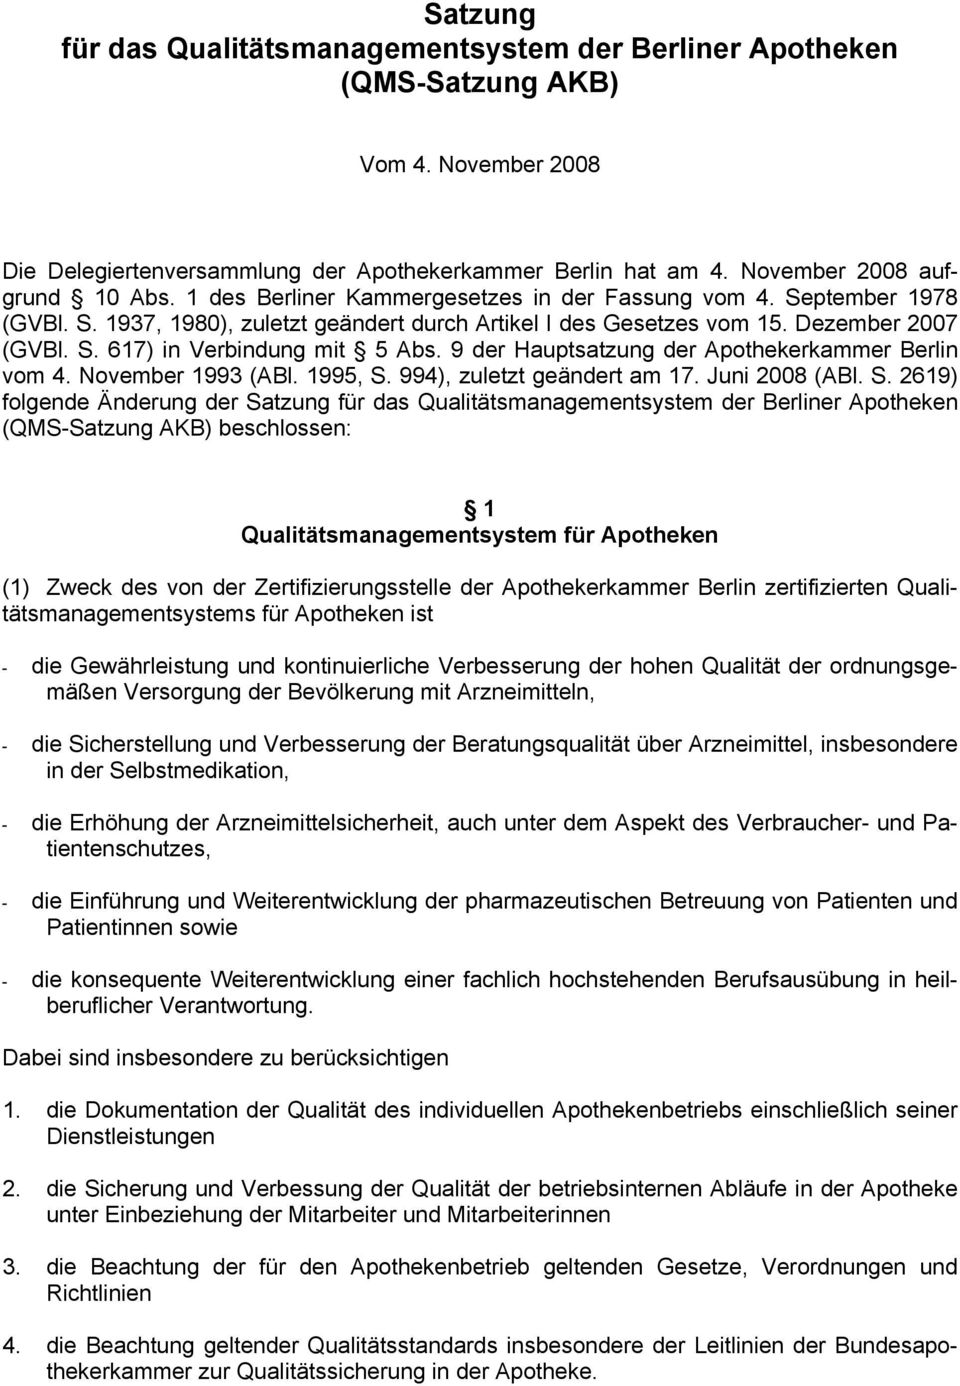 9 der Hauptsatzung der Apothekerkammer Berlin vom 4. November 1993 (ABl. 1995, S.